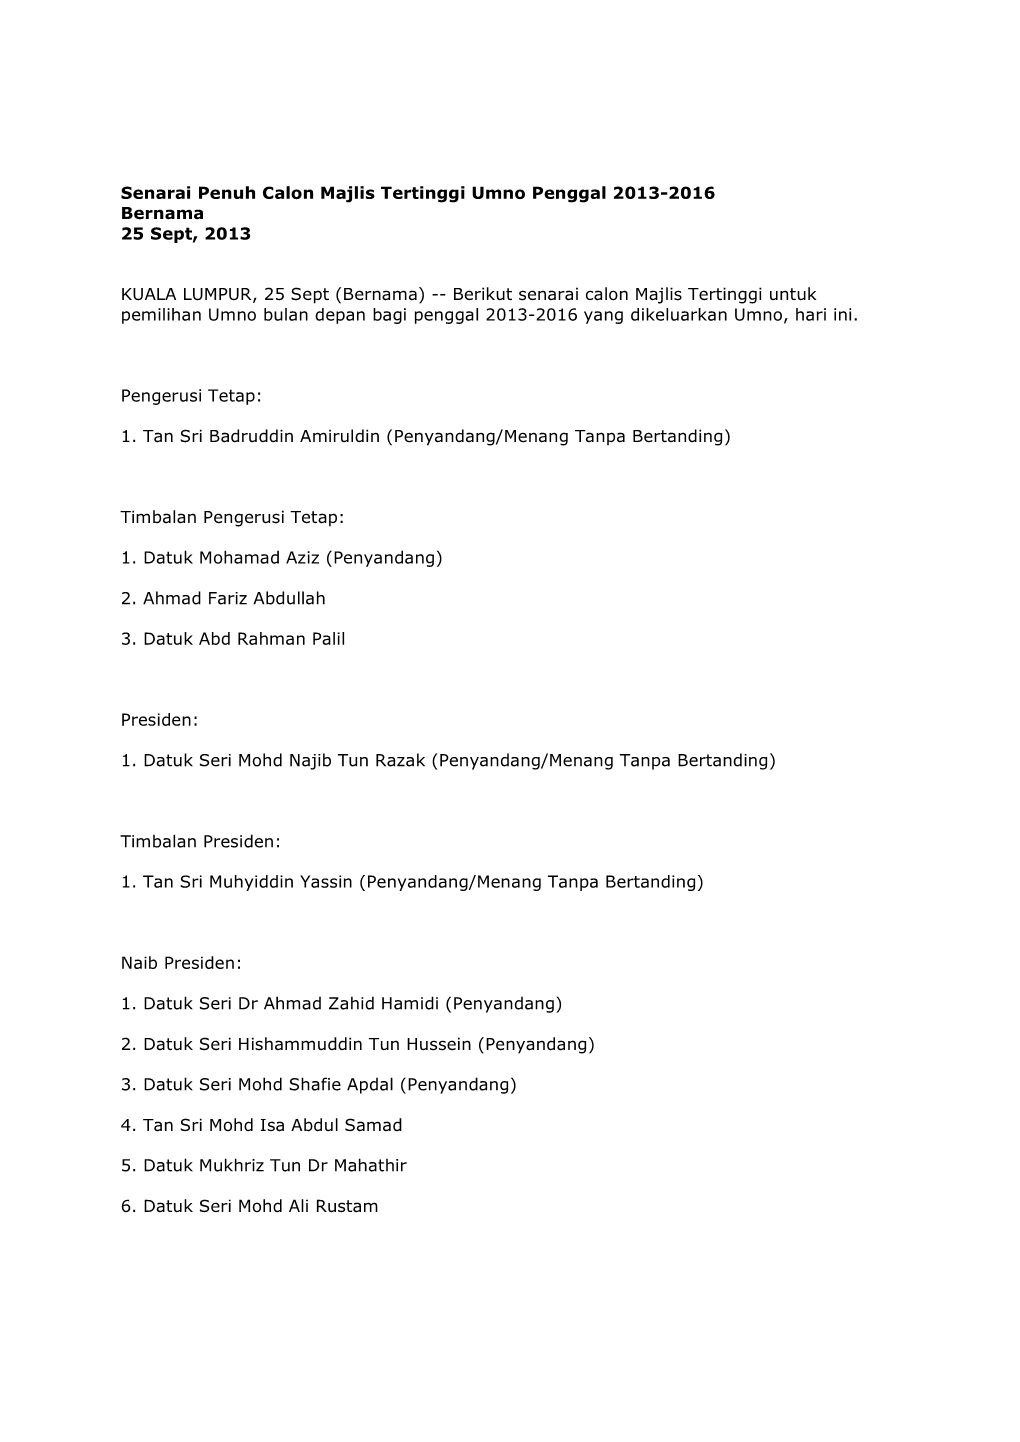 Senarai Penuh Calon Majlis Tertinggi Umno Penggal 2013-2016 Bernama 25 Sept, 2013